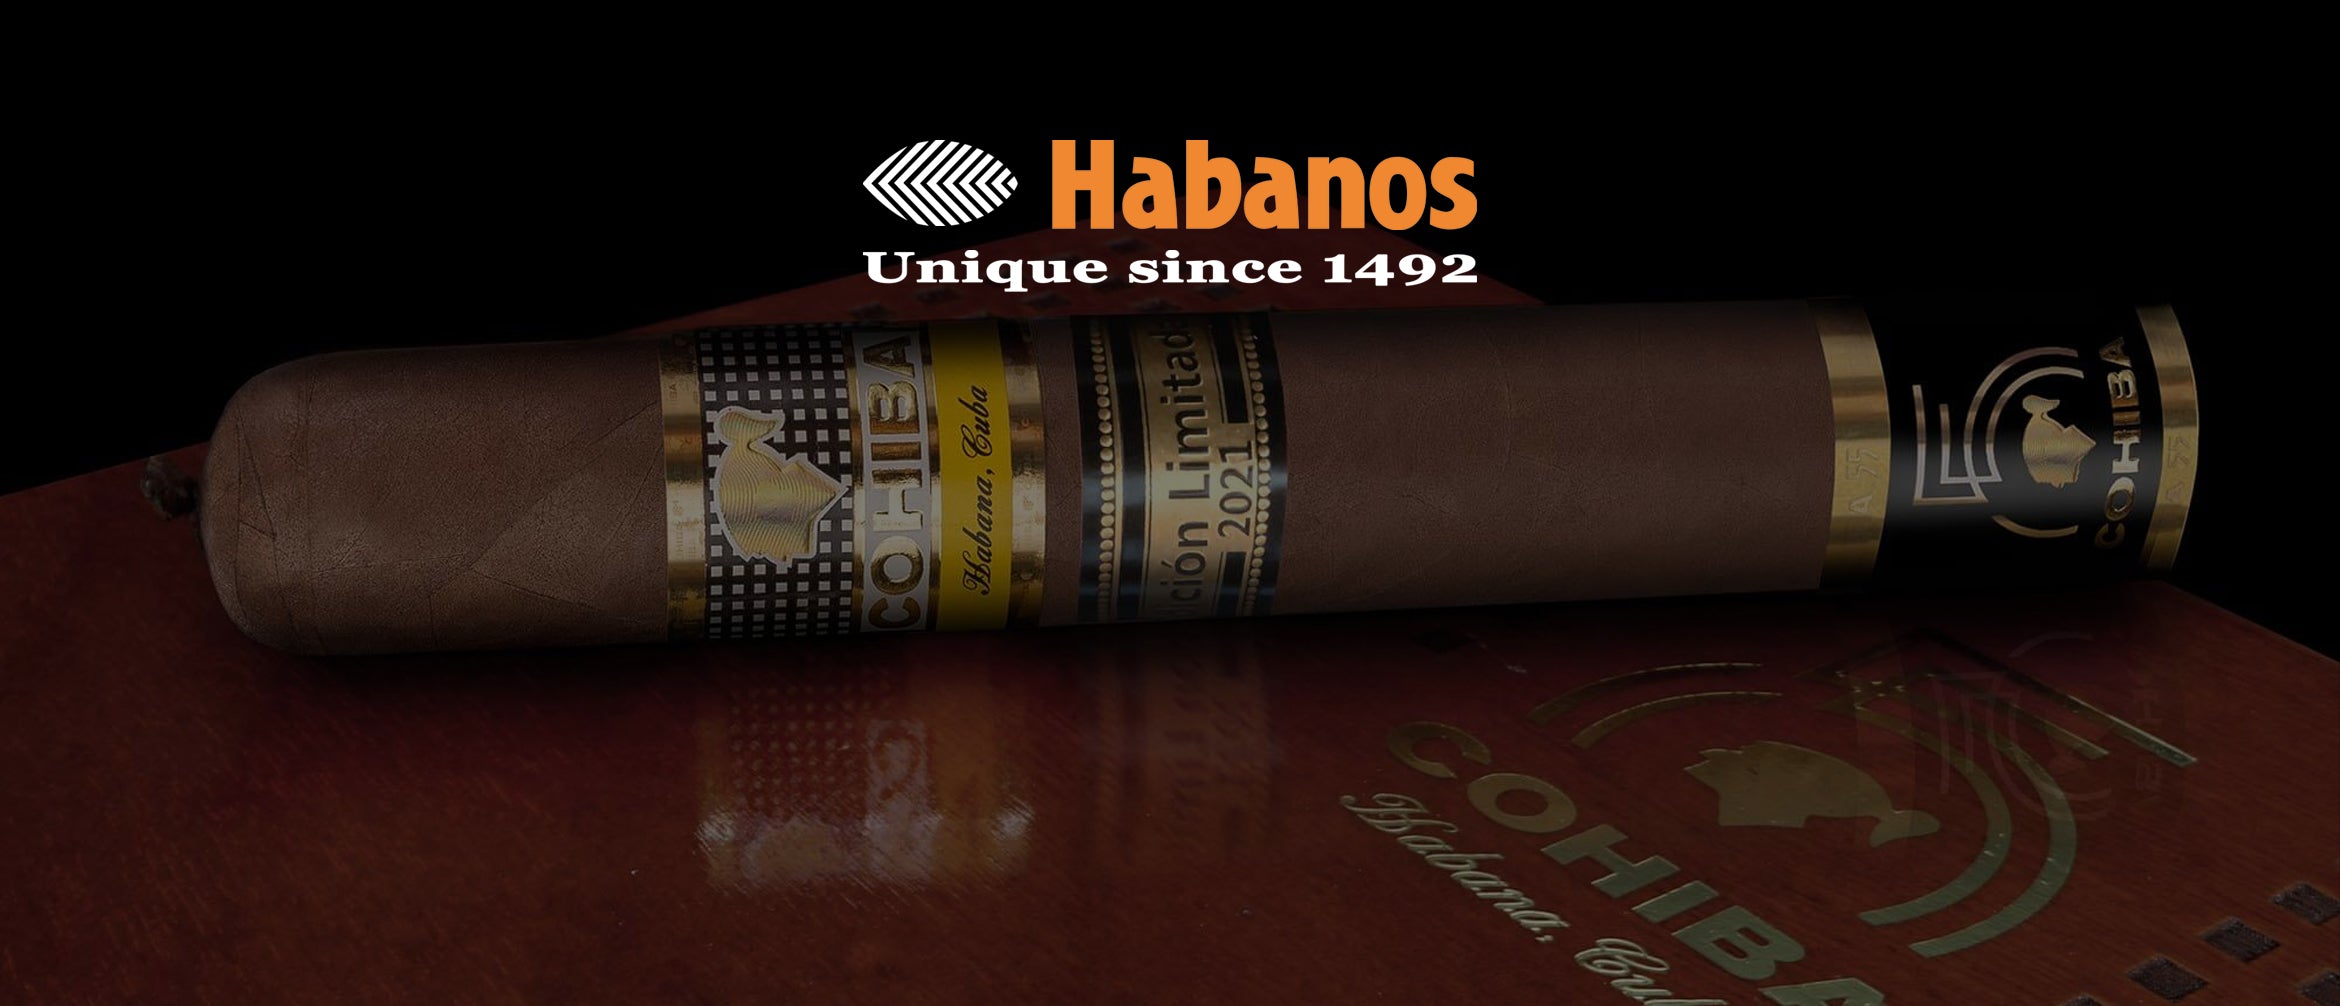 Cuban Cigars Export List 2021